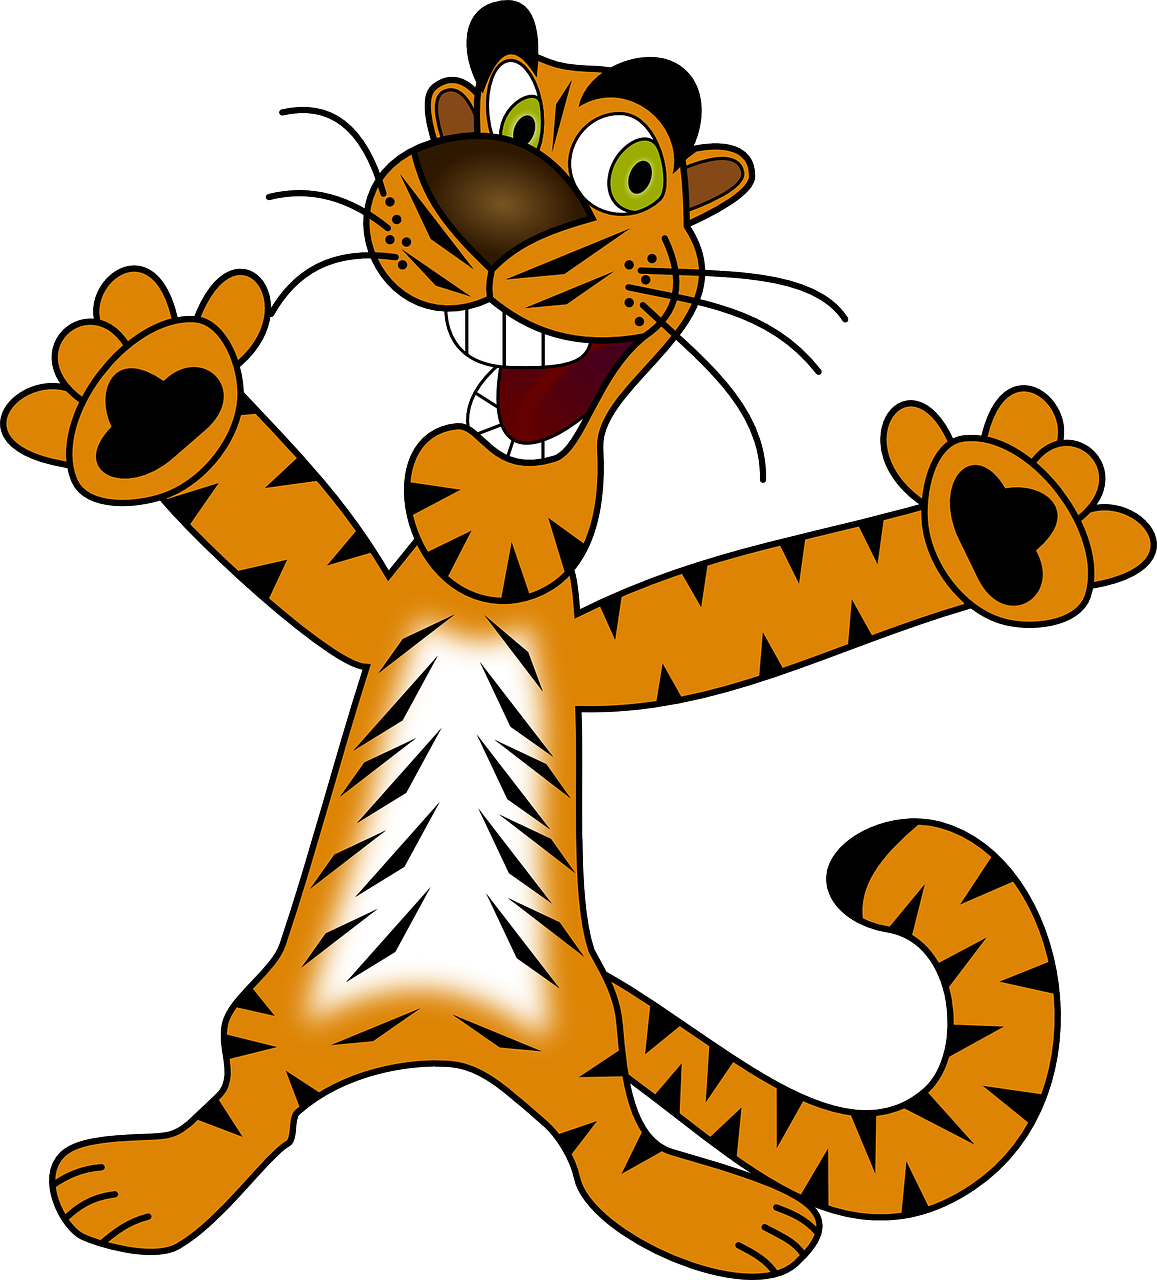 La imagen muestra un tigre